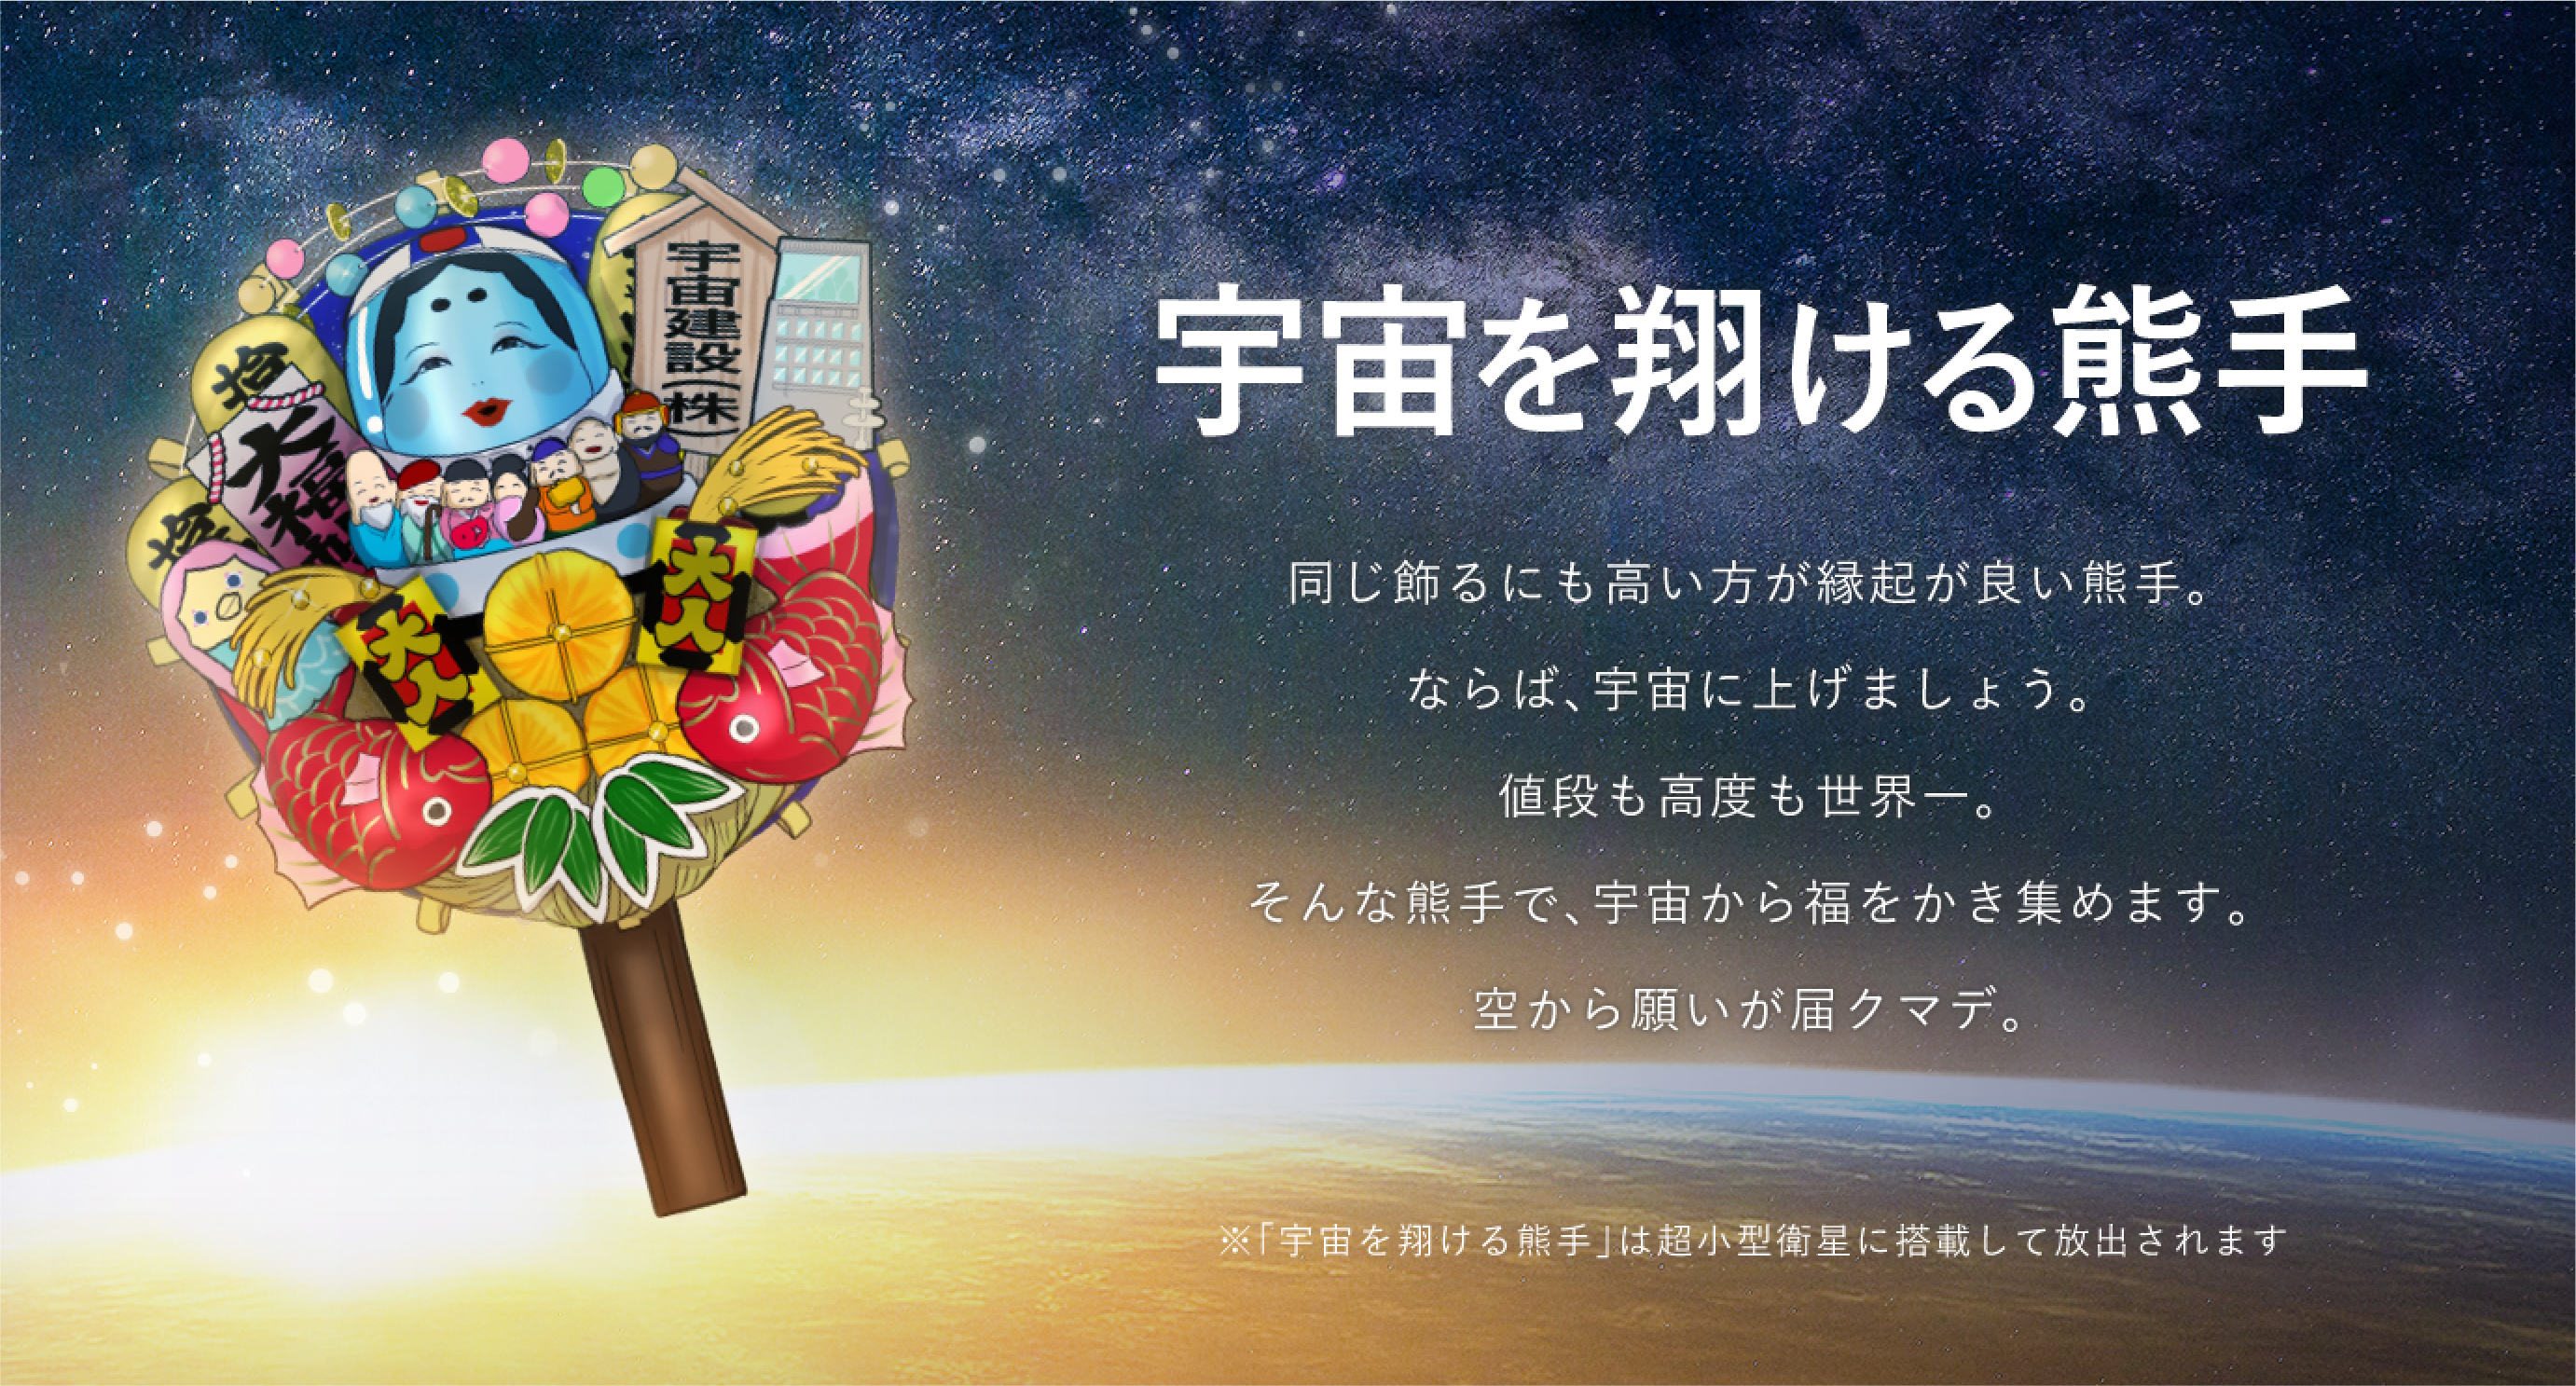 地球をまわって福をかき集める“宇宙を翔ける熊手”が11月9日の浅草酉の市にて2,021万円で発売